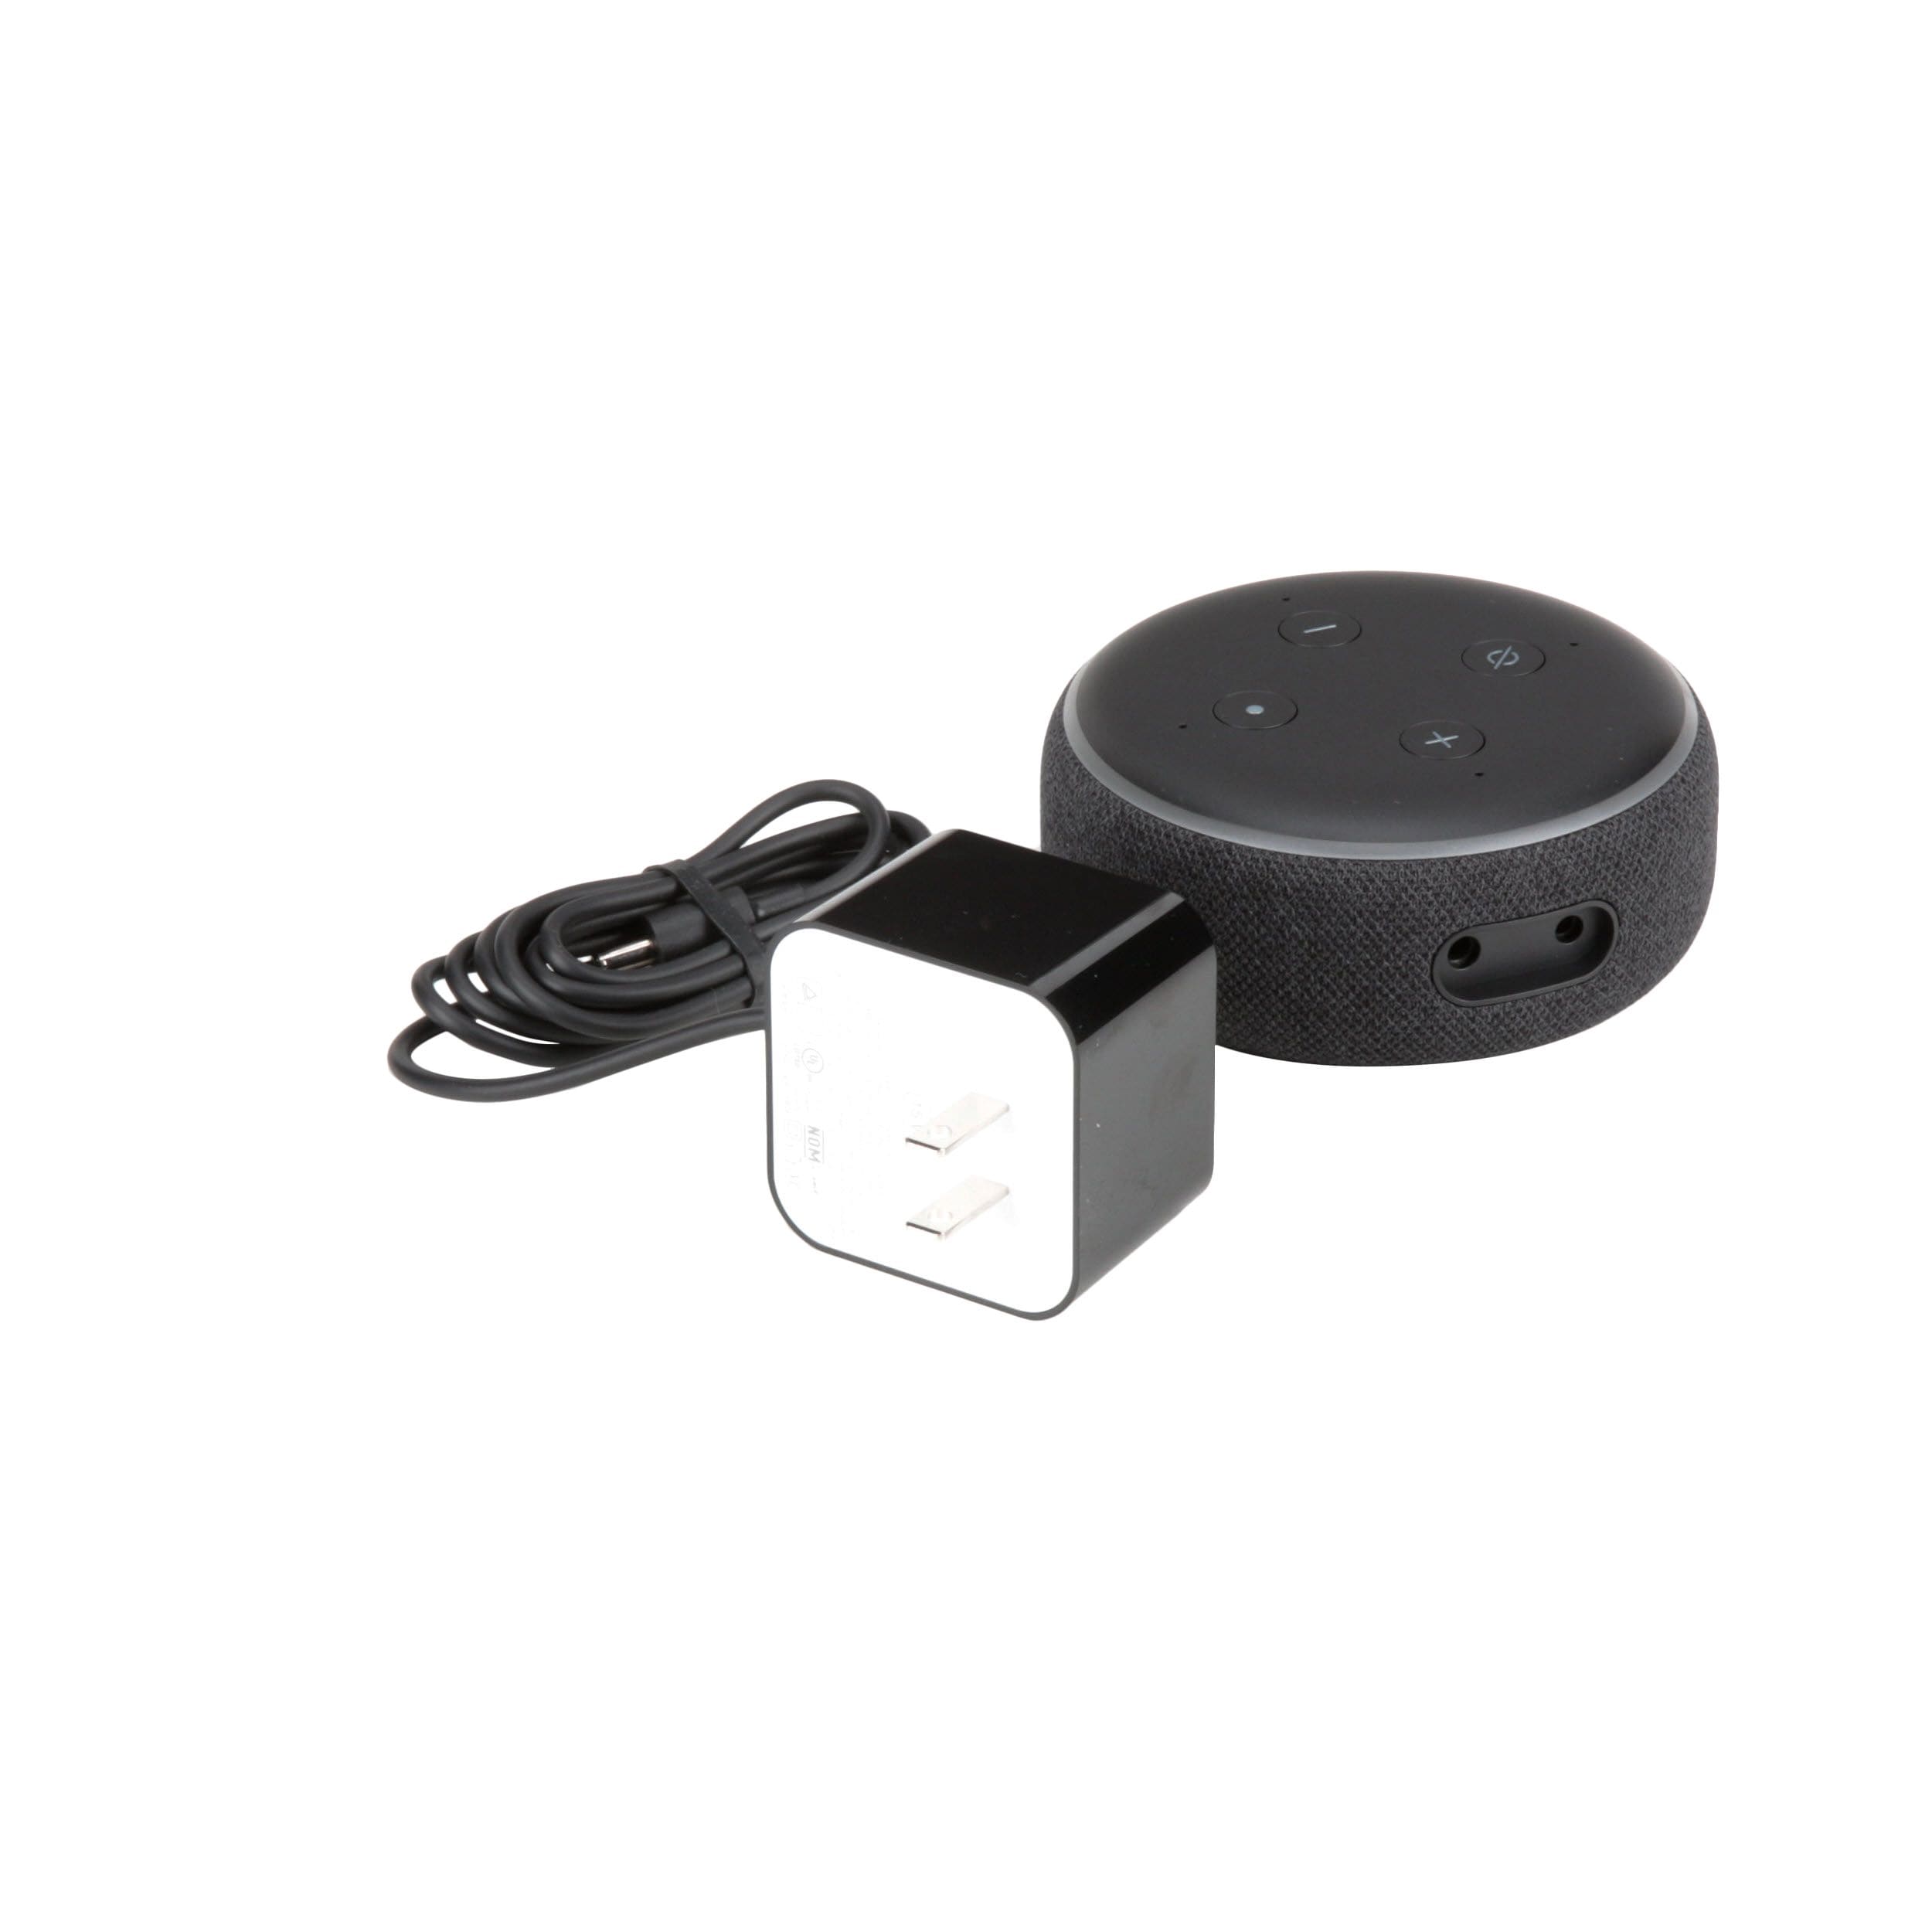 Echo Dot 3rd Gen Smart speaker with Alexa (Charcoal, Plum, Grey – JG  Superstore